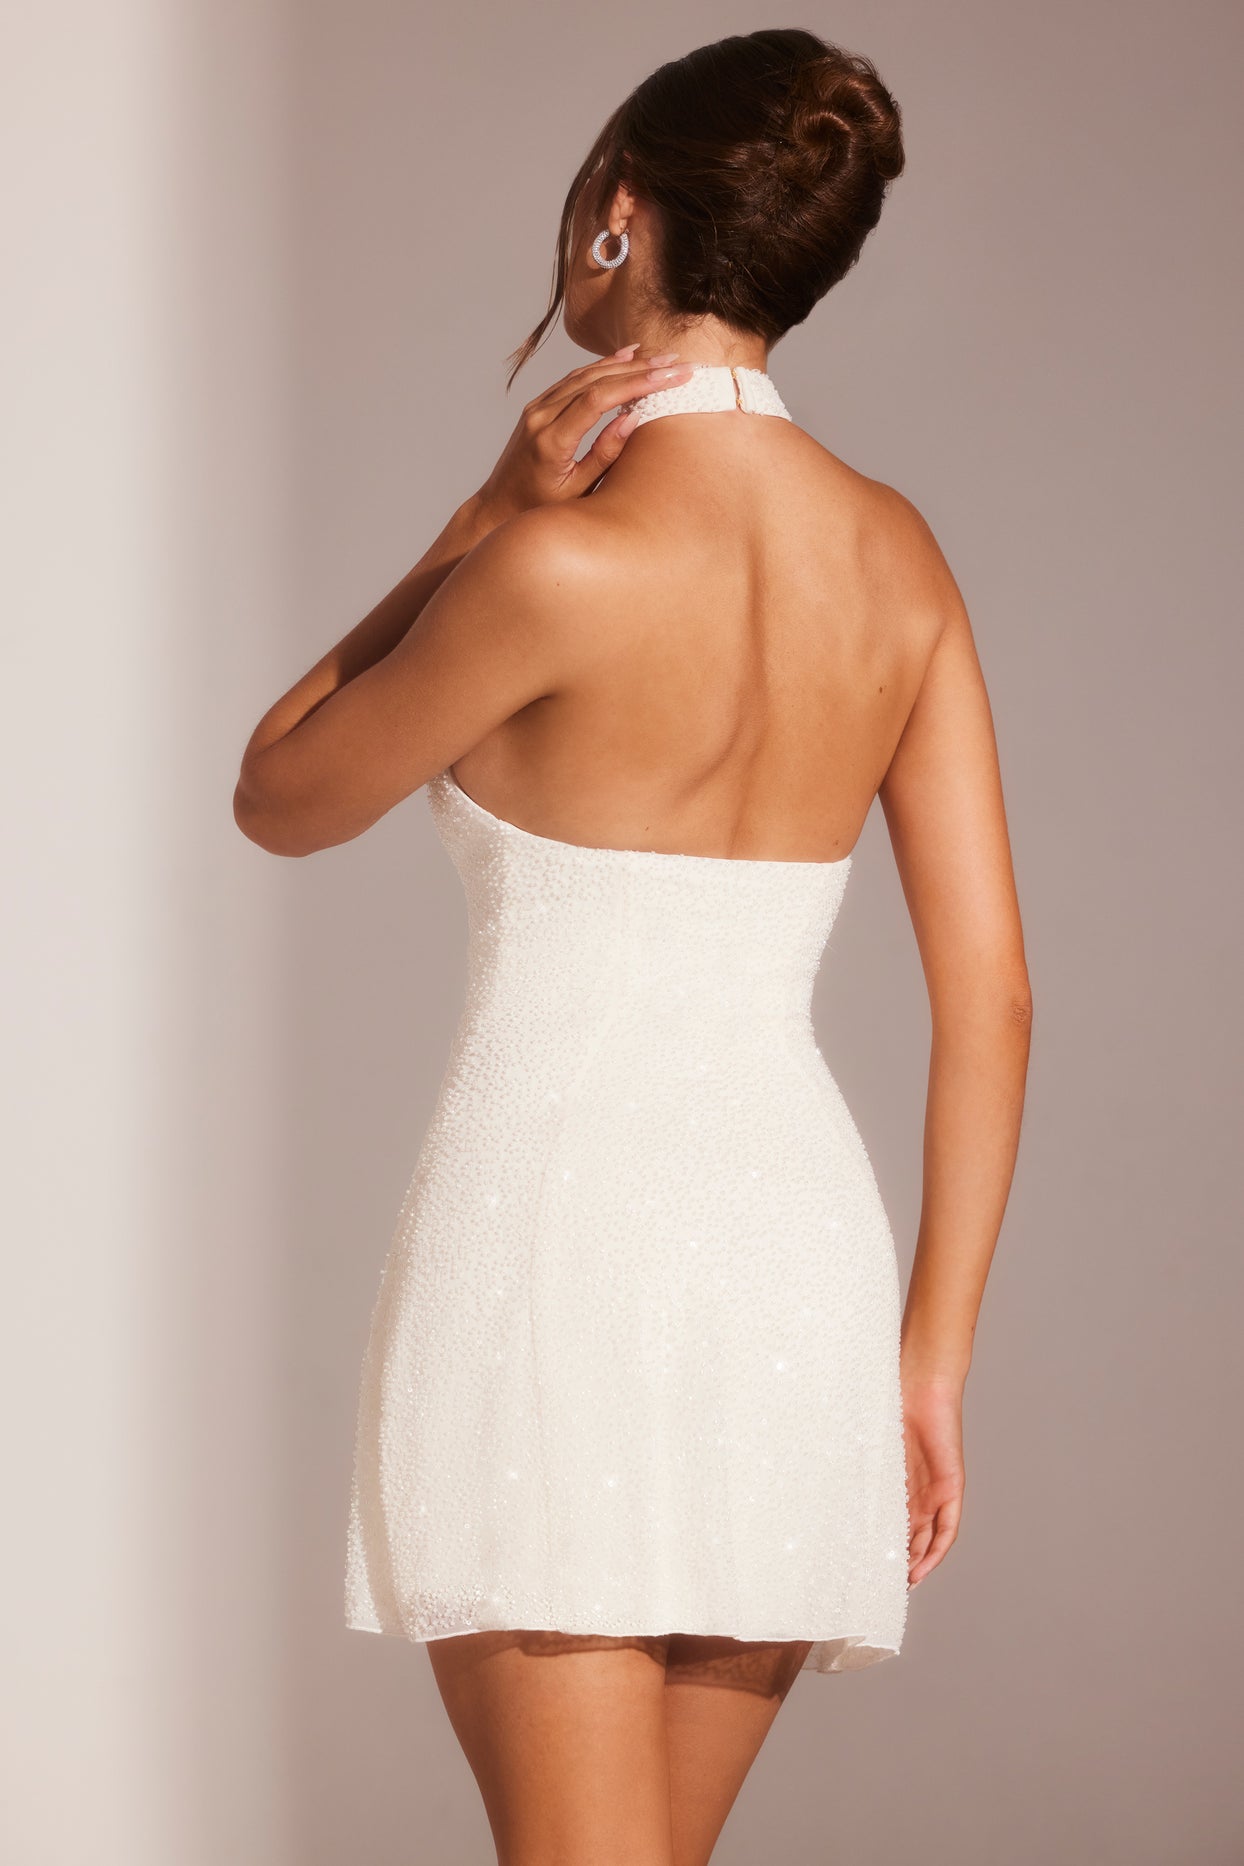 Mini-robe trapèze ornée à col asymétrique en blanc